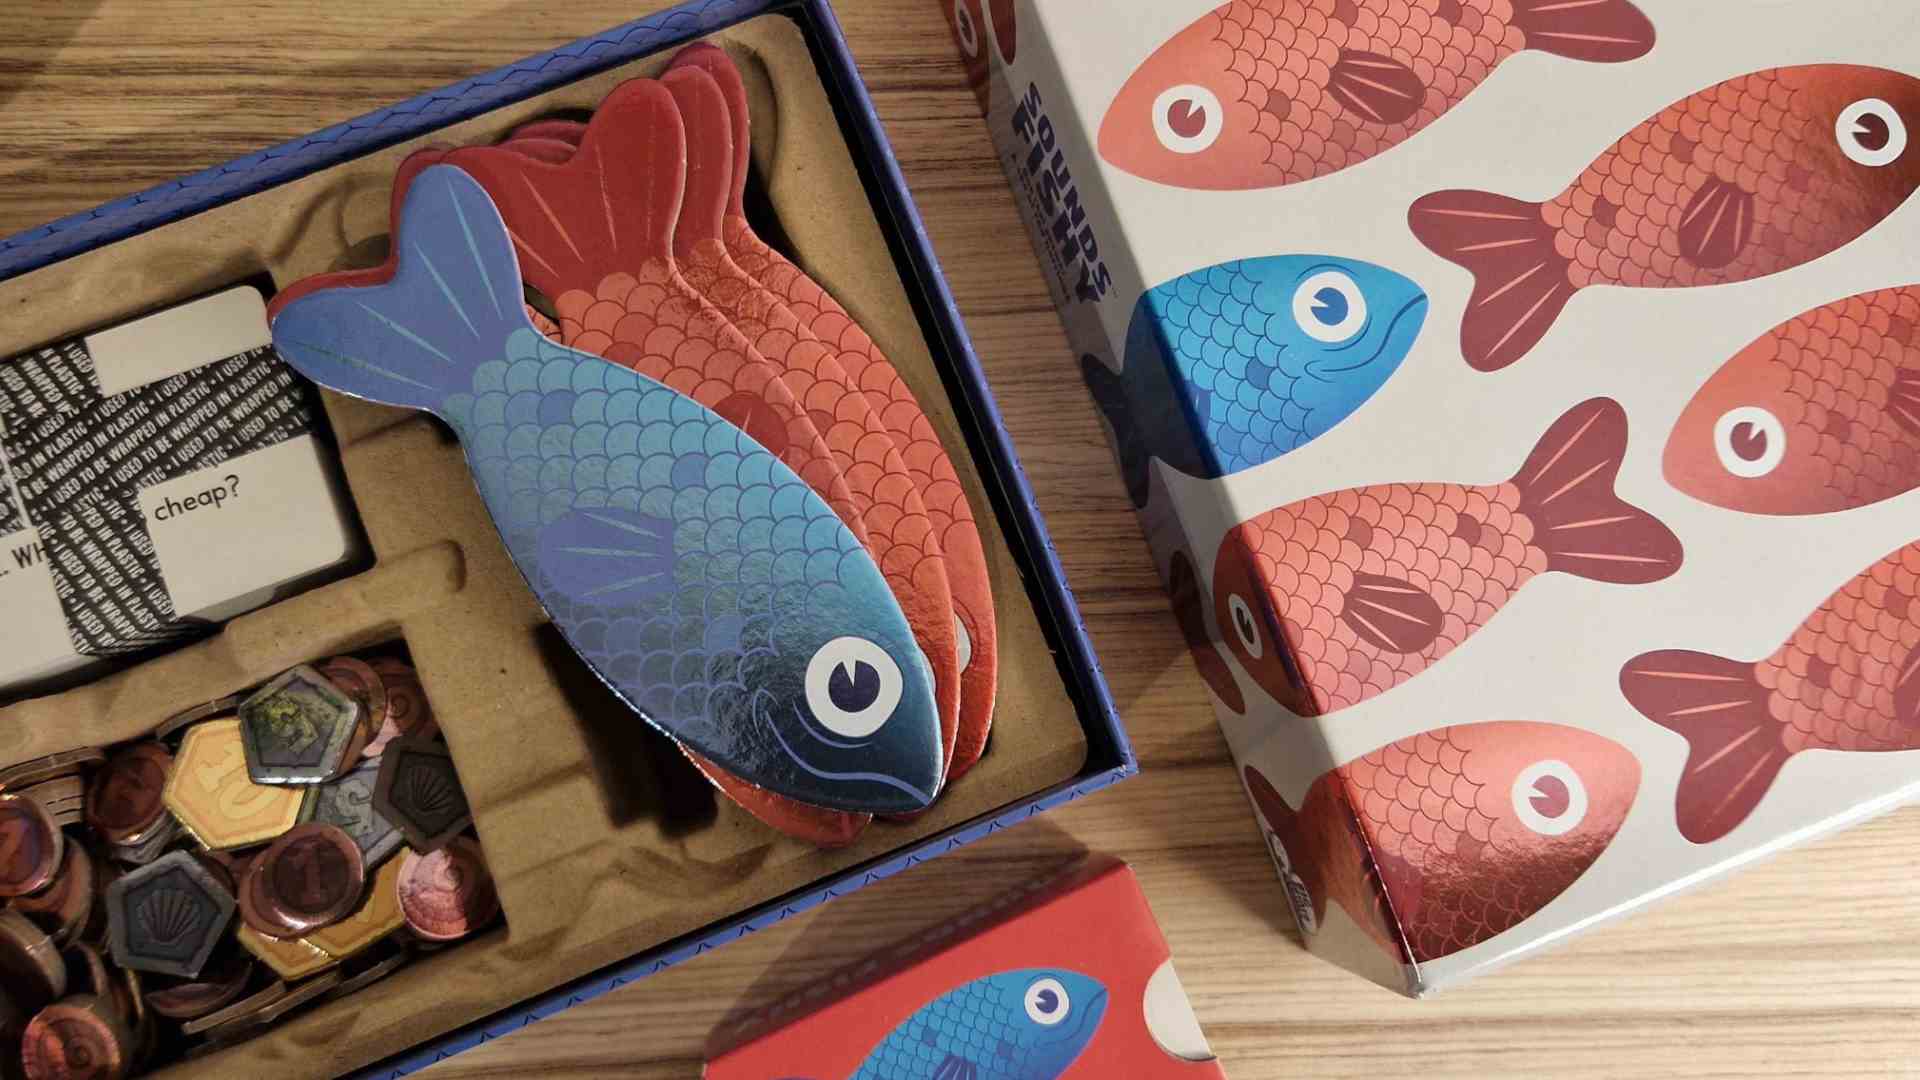 Boîte poissonneuse, ouverte sur une surface en bois